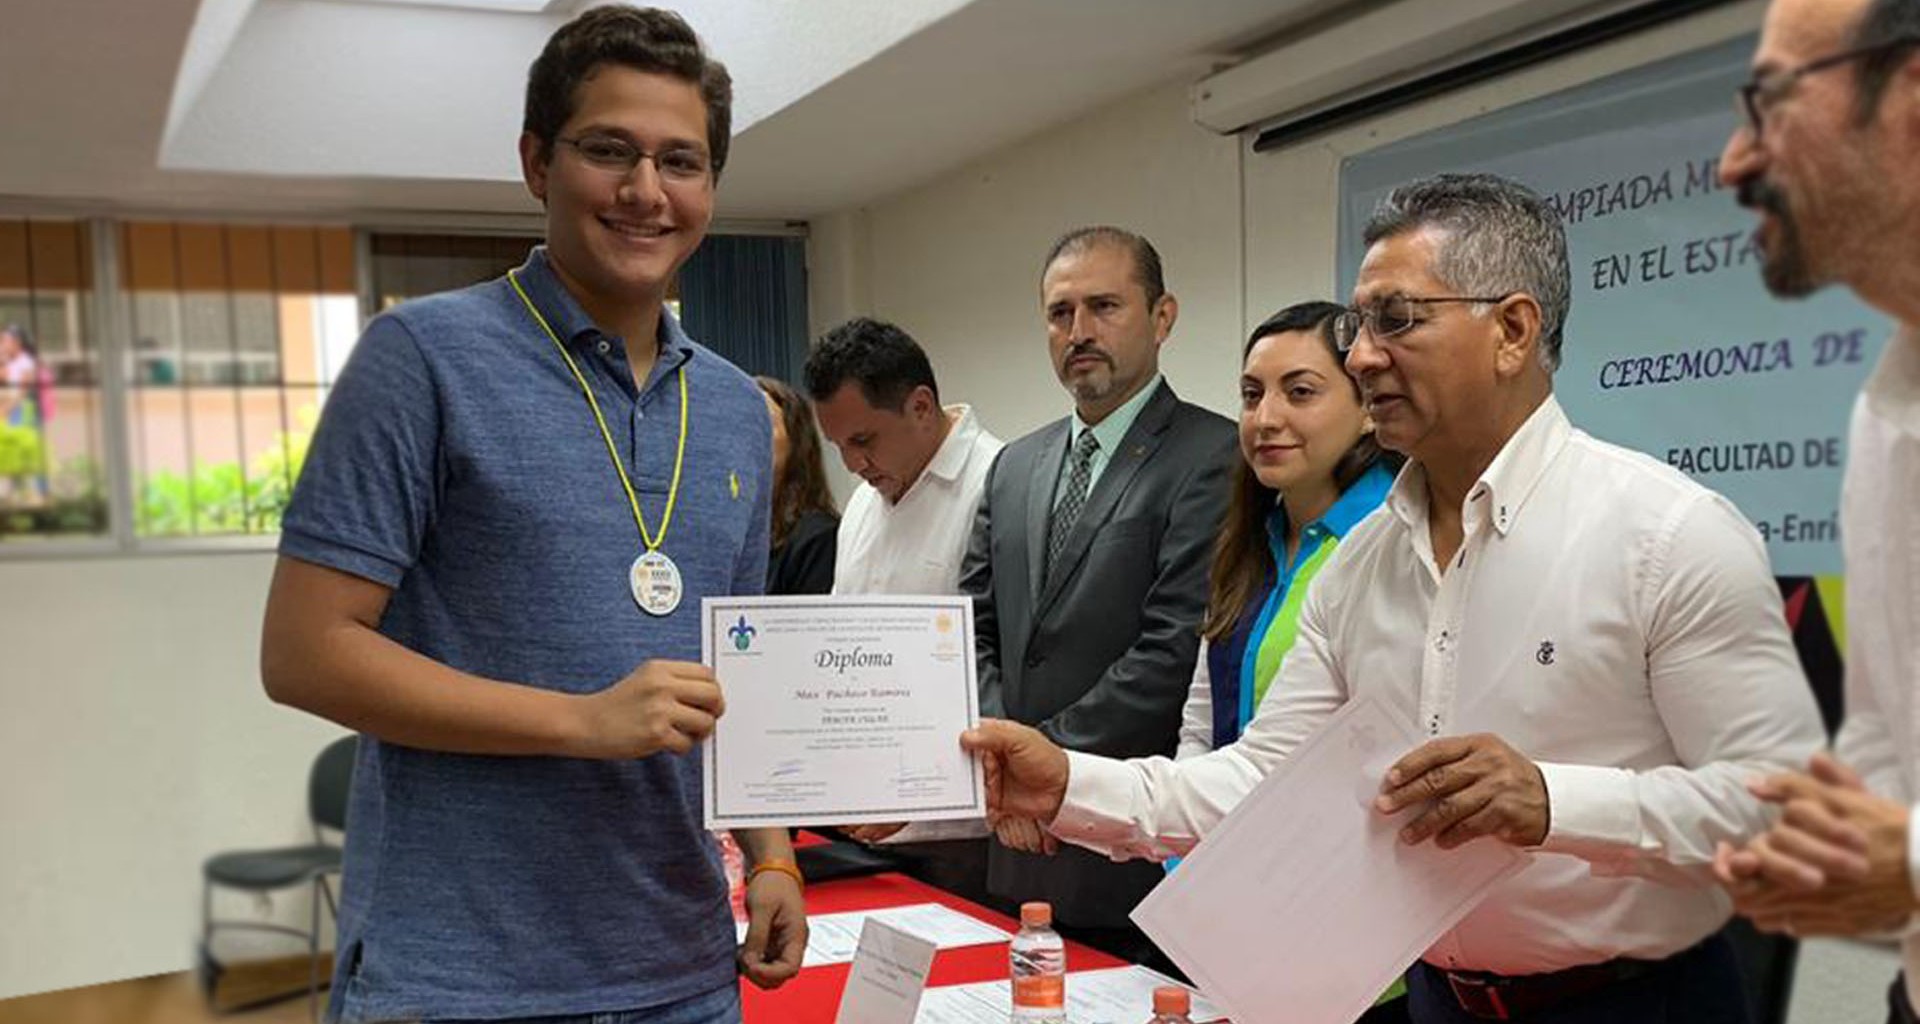 Max Pachecho, estudiante de PrepaTec campus Veracruz, obtuvo el tercer lugar en la Olimpiada estatal de matemáticas, ganando su pase al primer selectivo donde la meta final es el nacional.